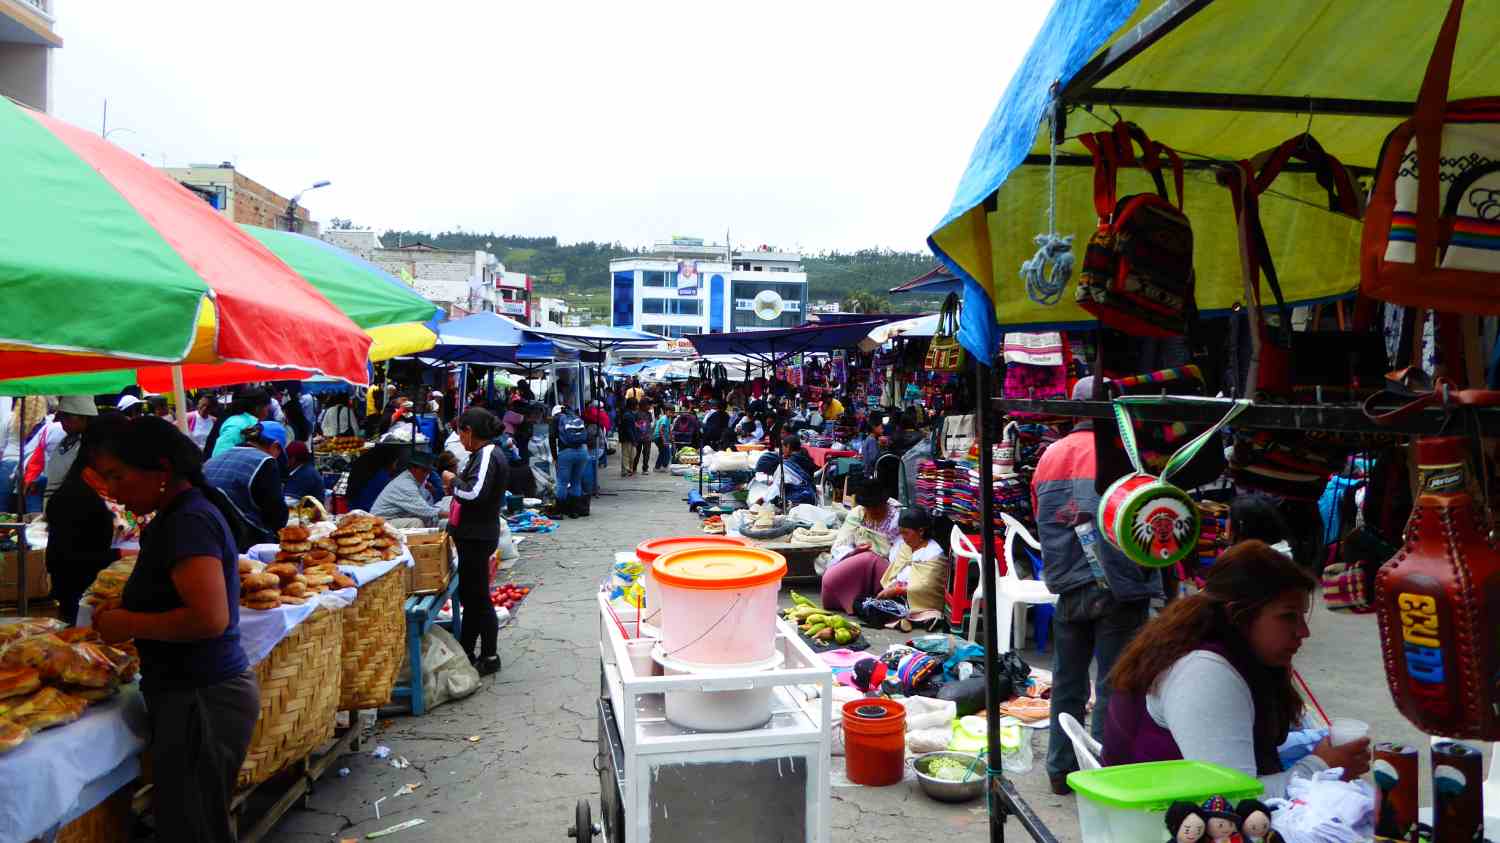 Market in Ecuador